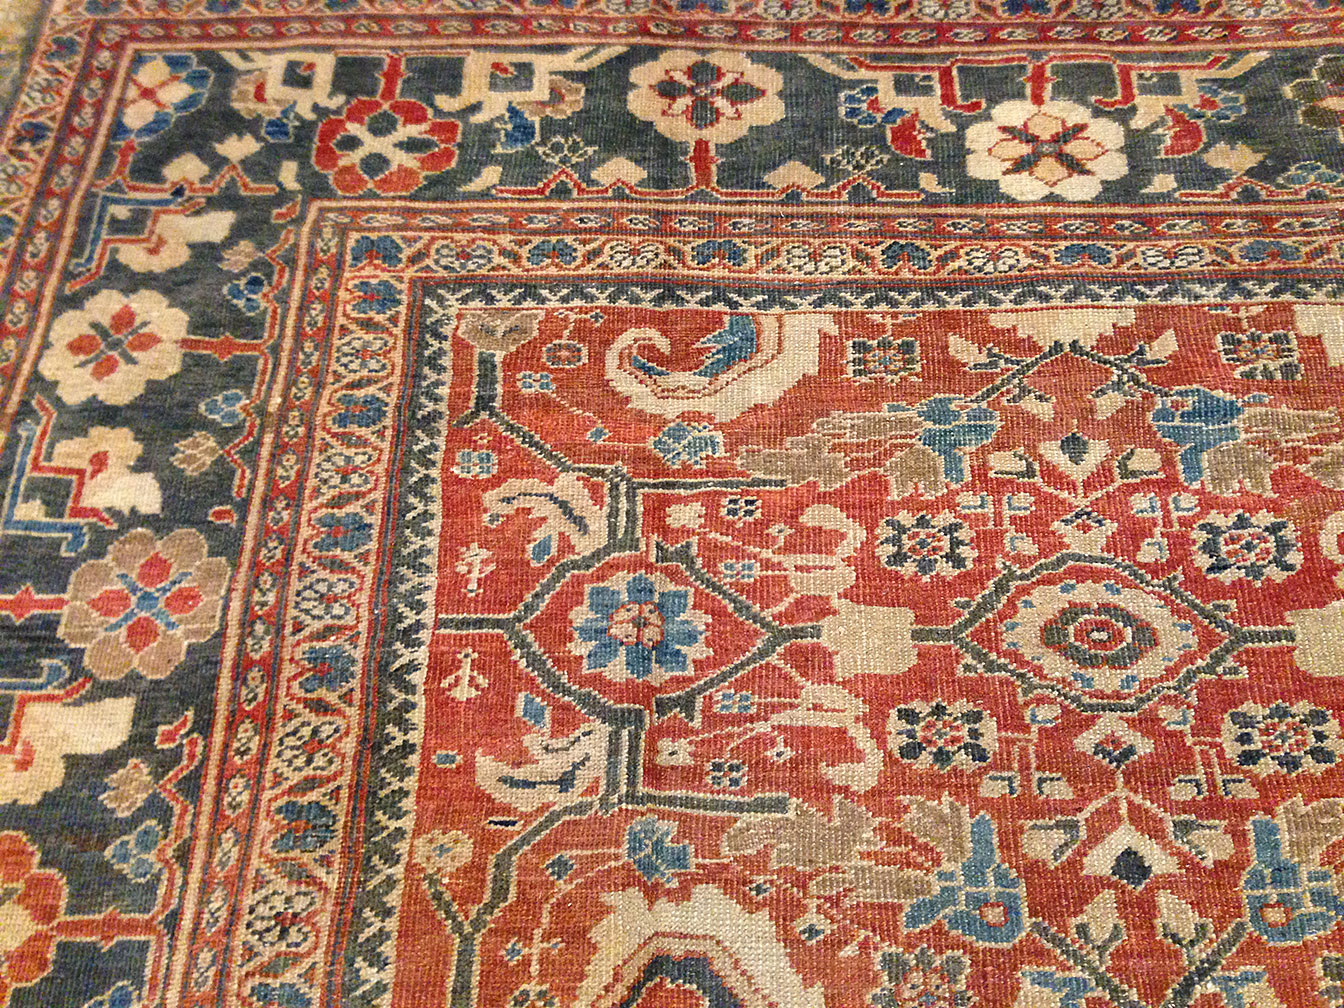 Antique sultan abad Carpet - # 9458